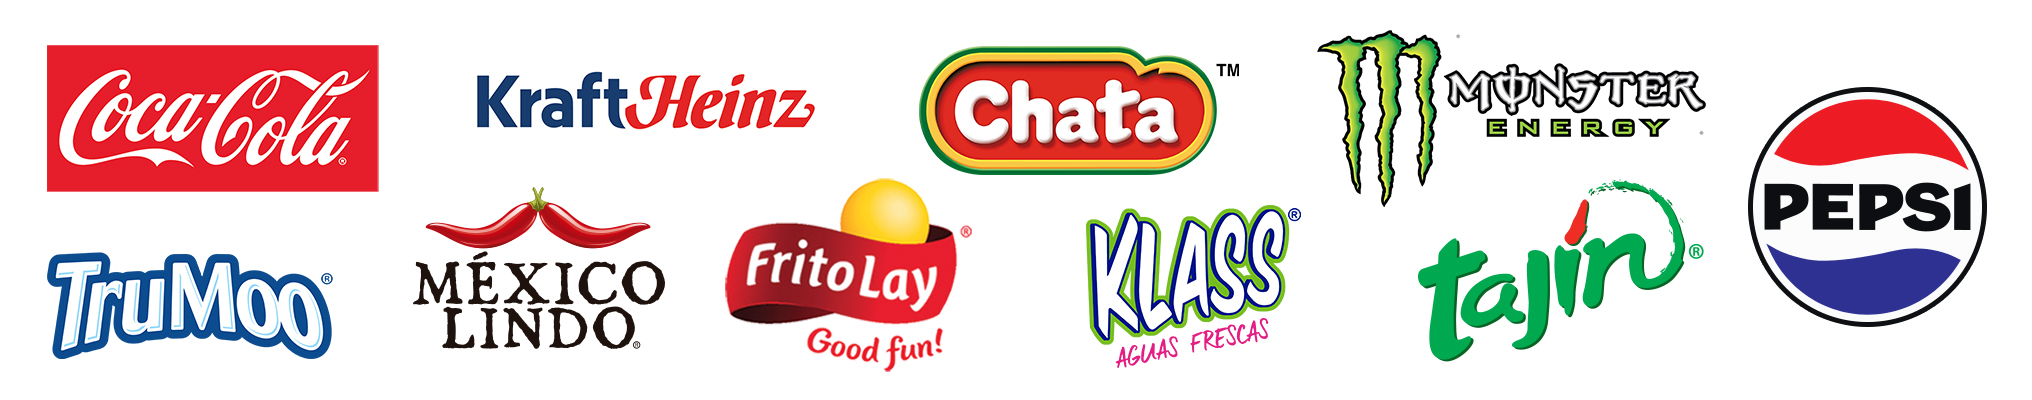 Sponsor logos for Big Game Sweepstakes including Coca-Cola, Kraft/Heinz, Chata, Monster Energy, TruMoo, Mexico Lindo, Frito Lay, Klass, Tajin and Pepsi